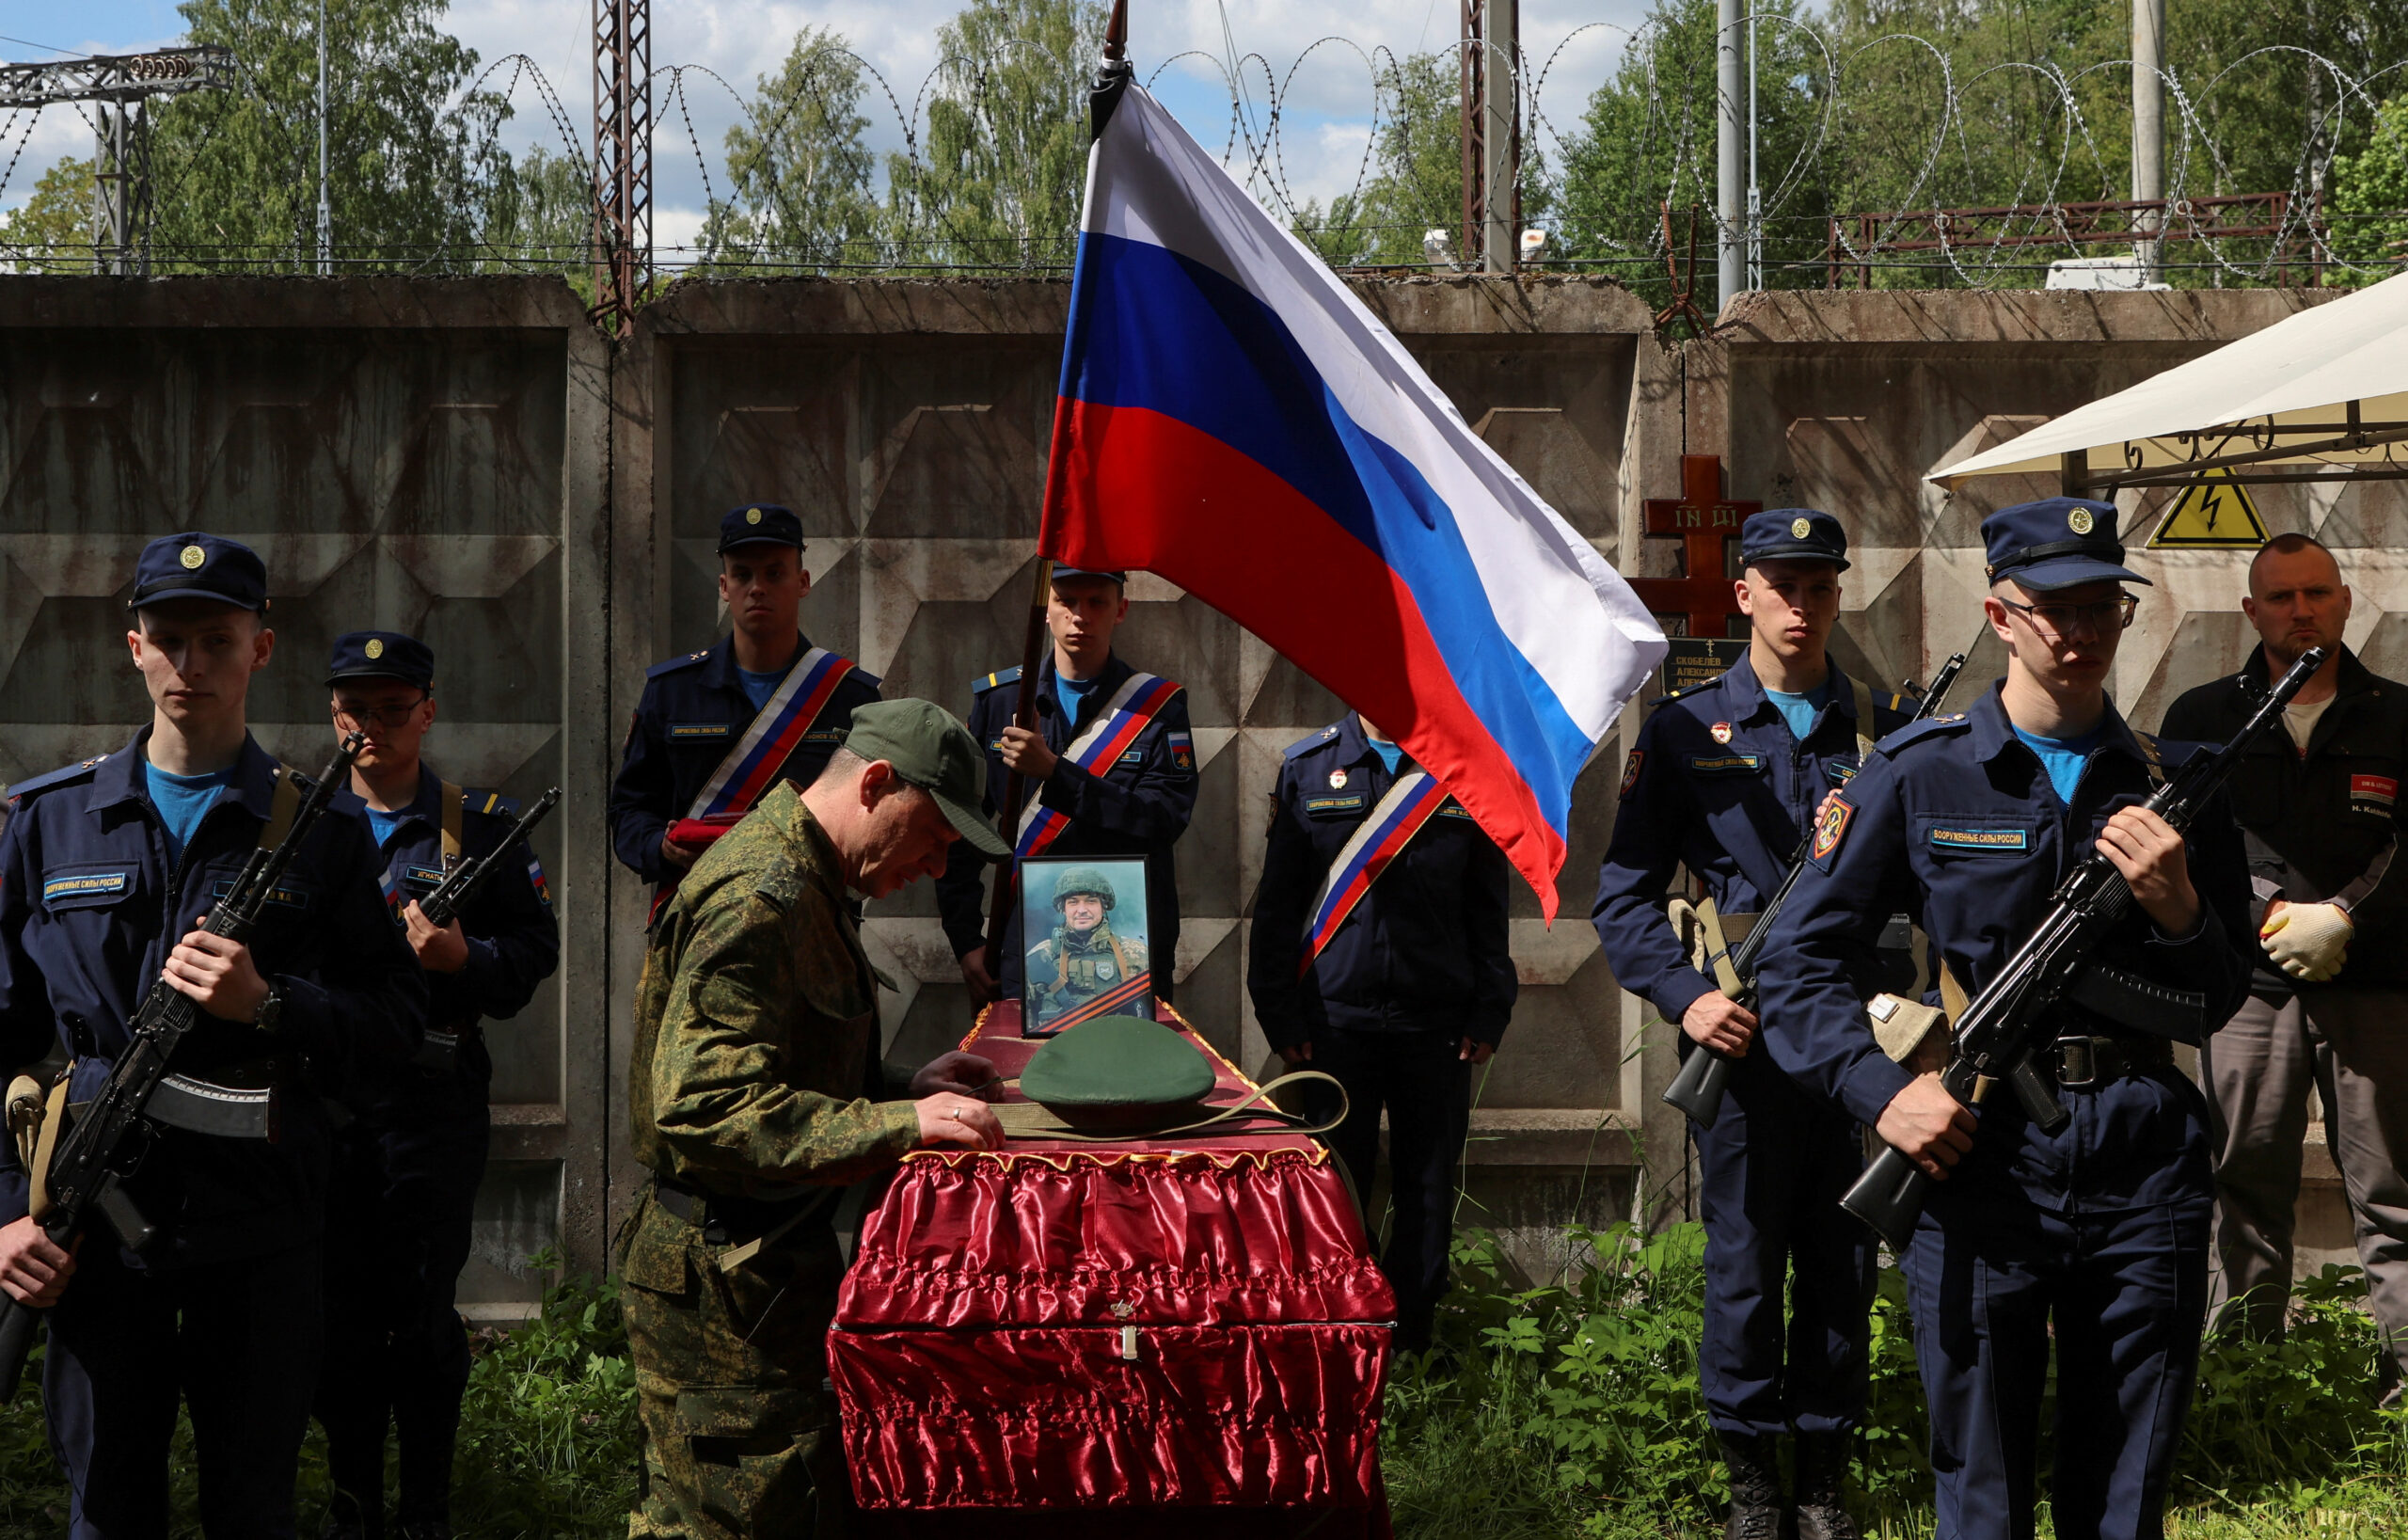 Похороны российского солдата, убитого в российско-украинском конфликте. Фото ANTON VAGANOV / REUTERS / Scanpix / Leta